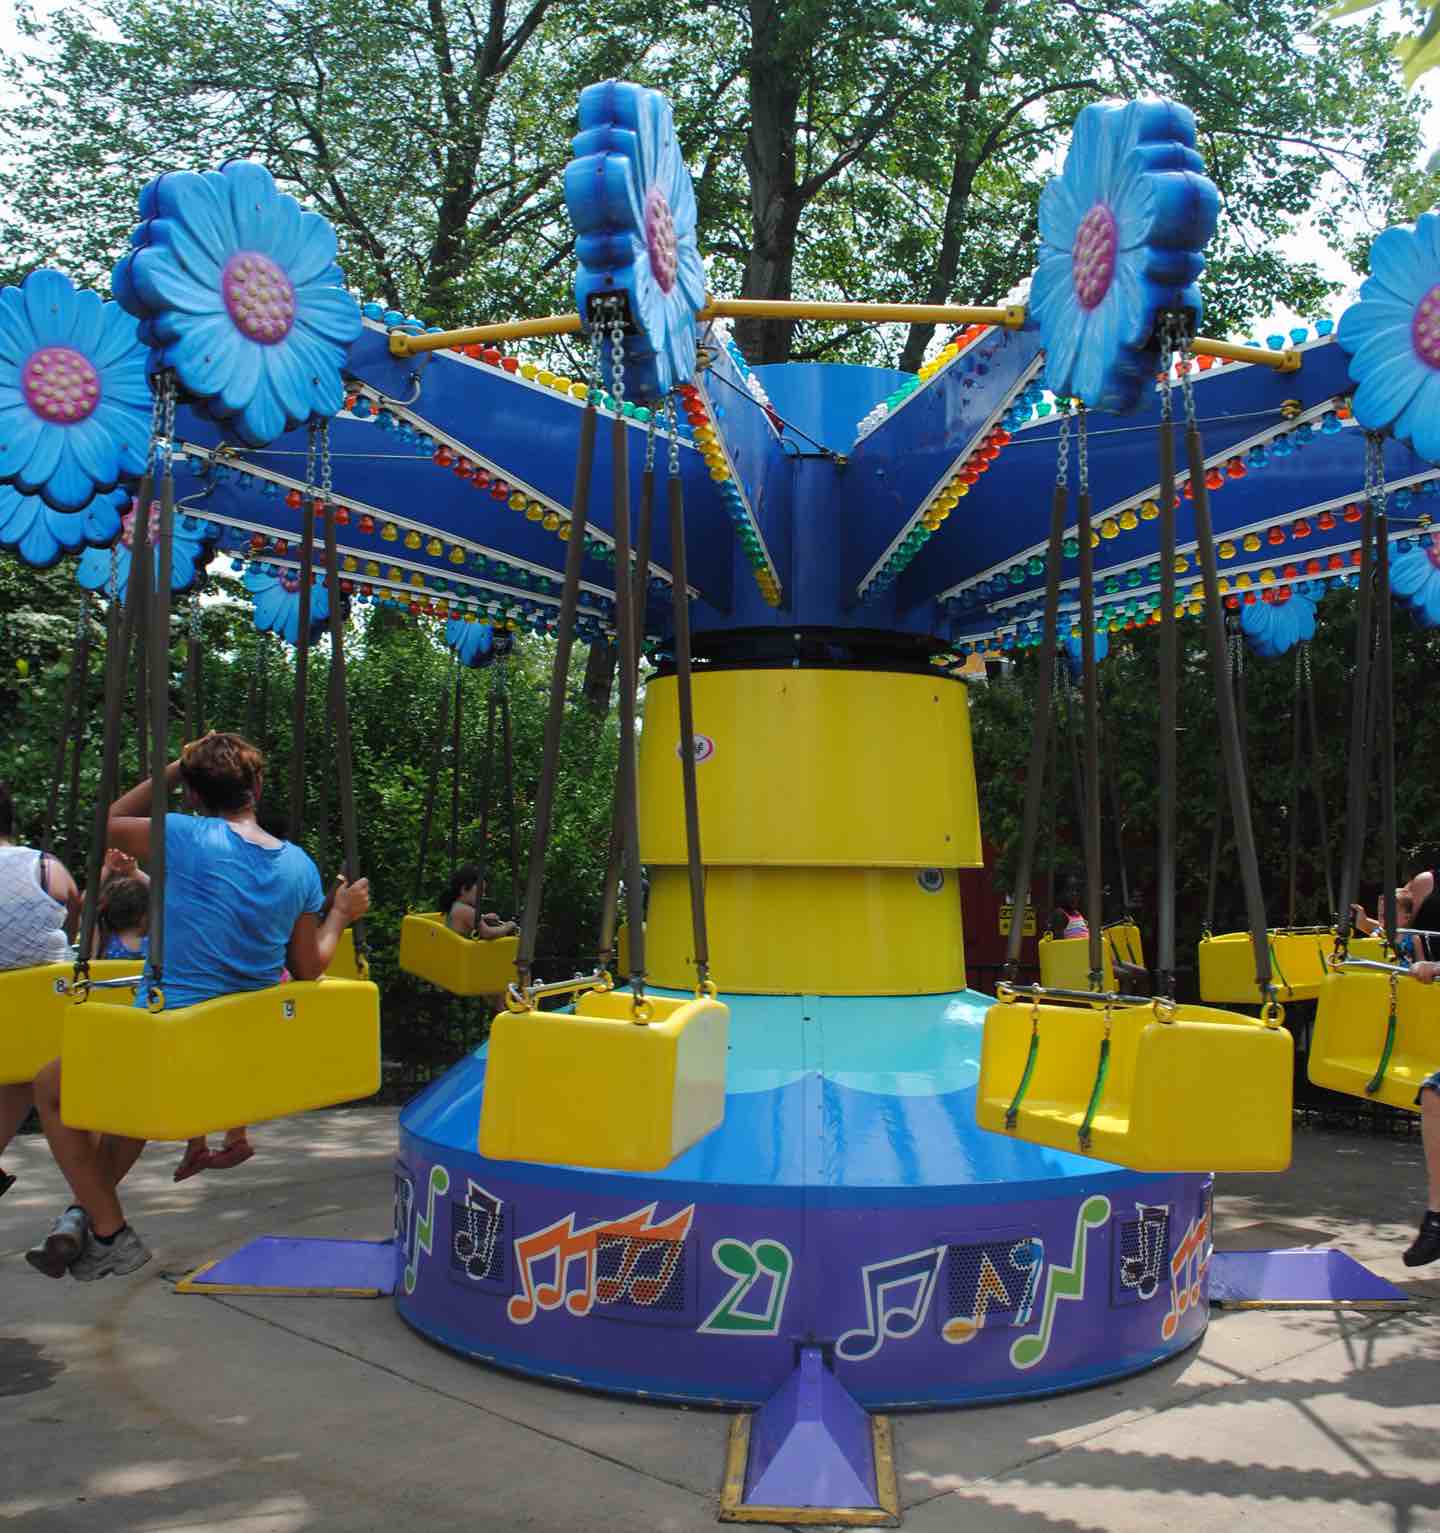 Zinger Swings Six Flags New England